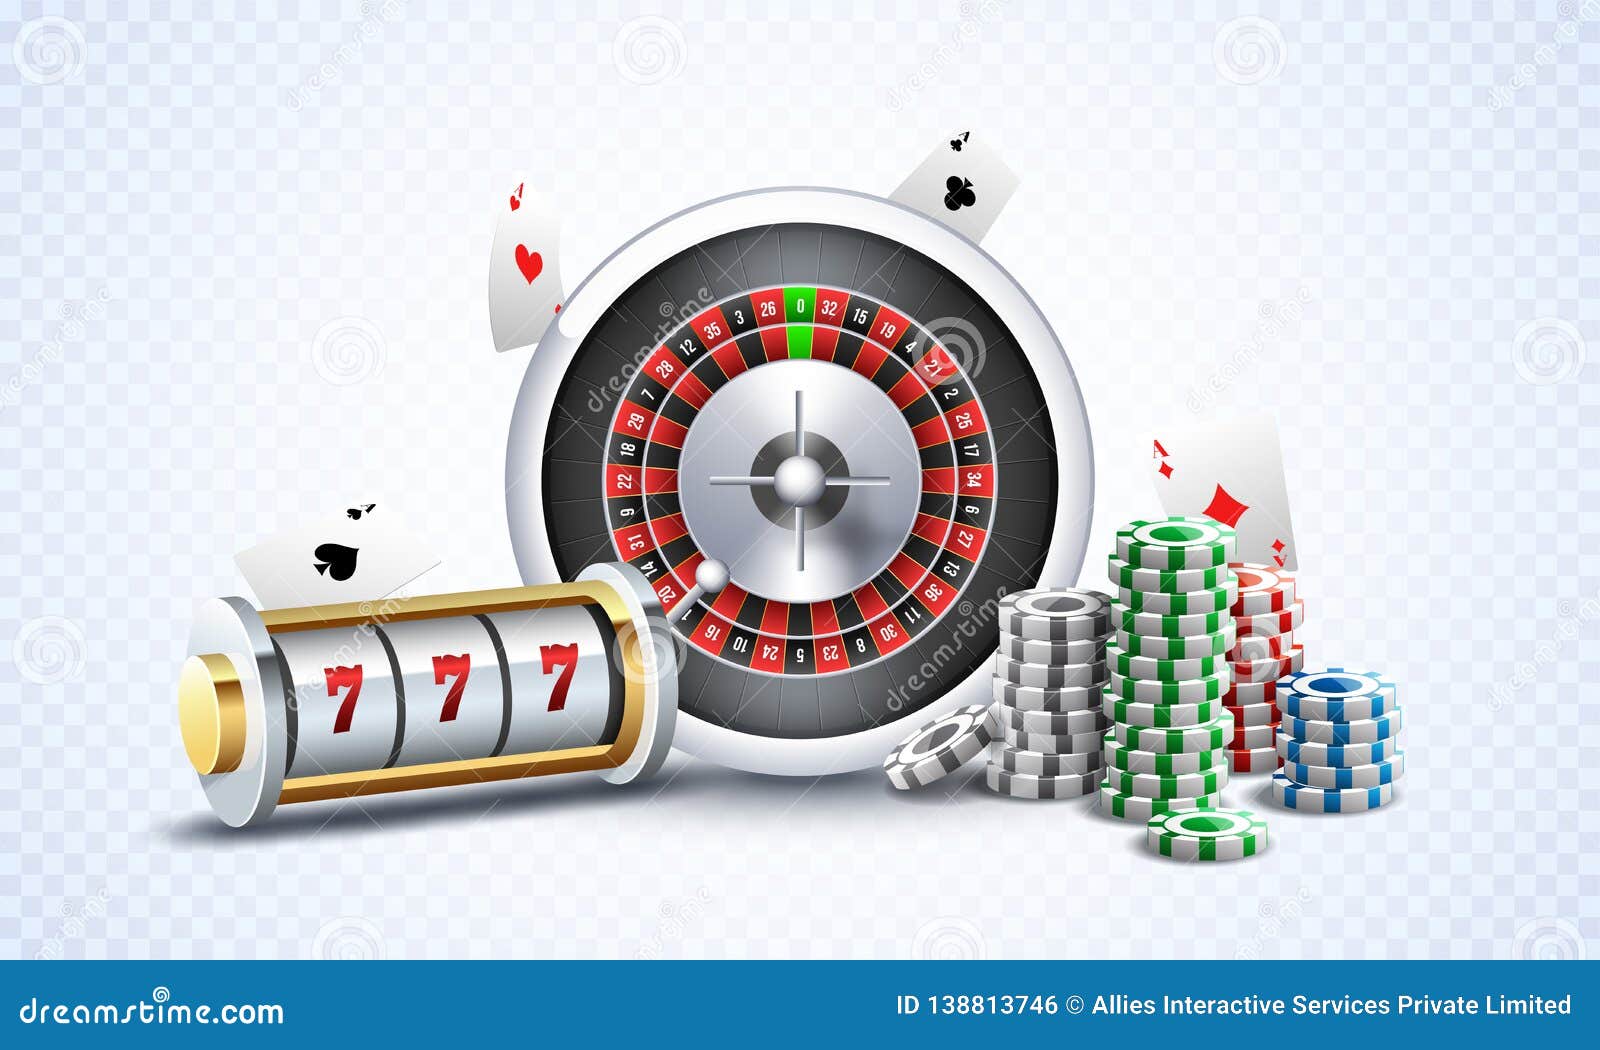 Bạn thích đánh bạc? Hãy xem hình ảnh của máy slot thú vị này và mơ về những khoản tiền lớn mà bạn có thể thắng được!